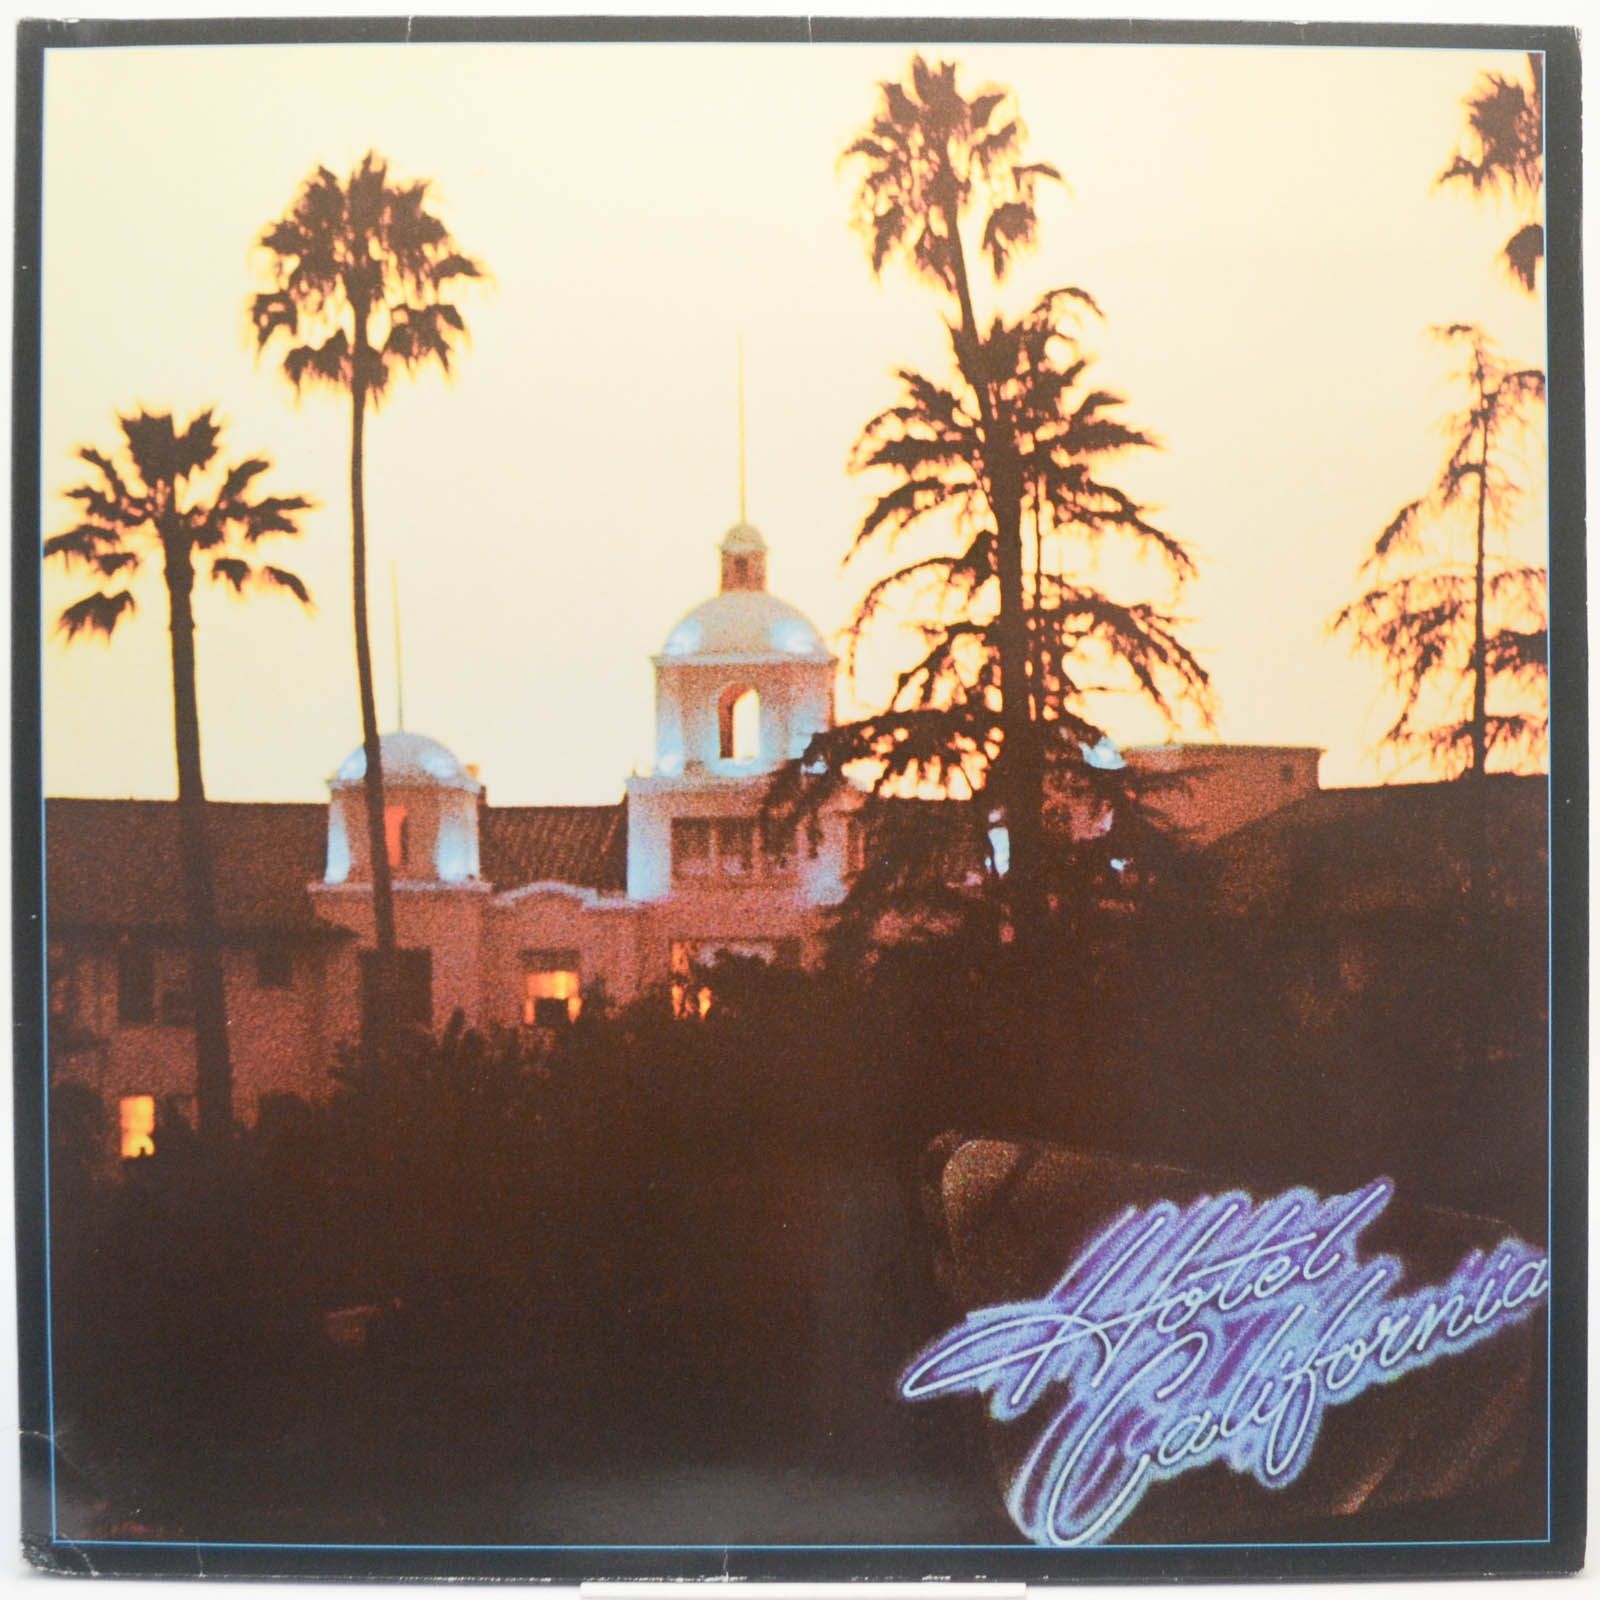 Eagles — Hotel California, 1976